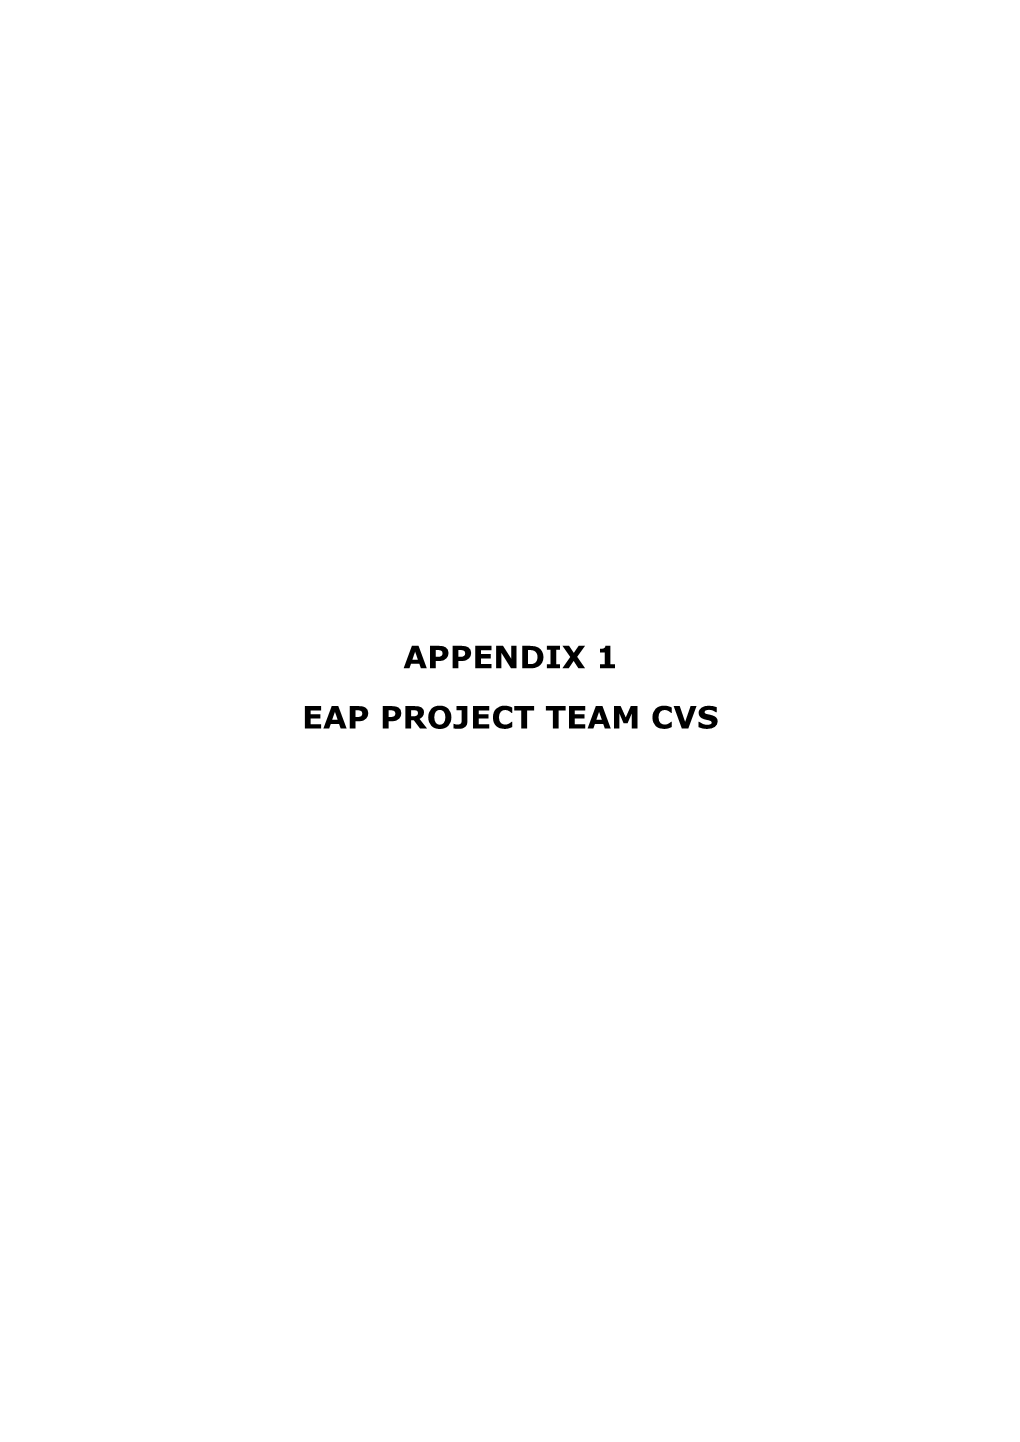 Appendix 1 Eap Project Team Cvs